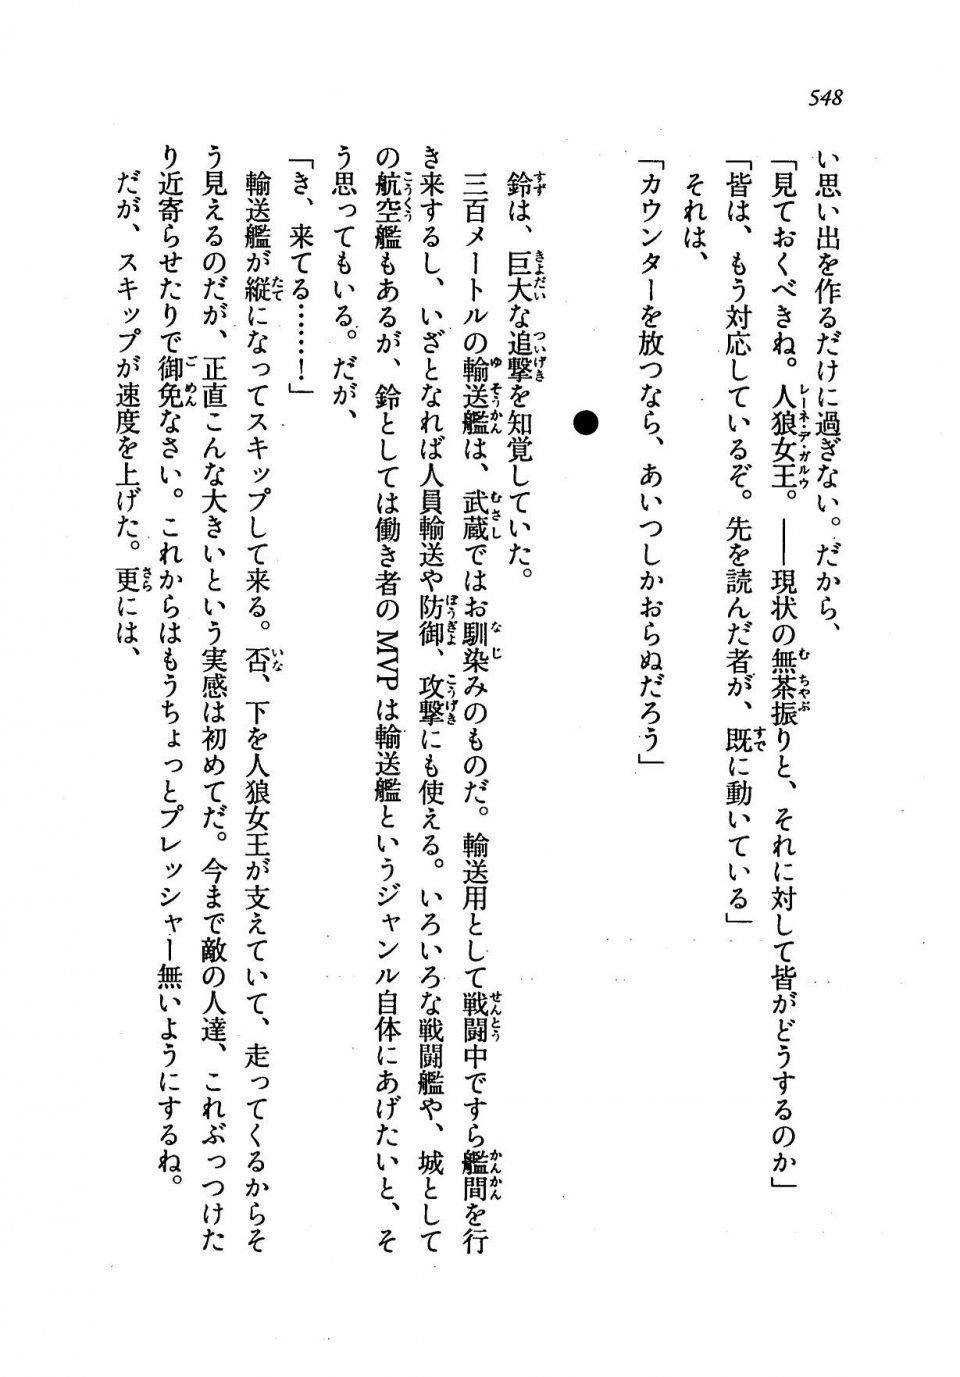 Kyoukai Senjou no Horizon LN Vol 19(8A) - Photo #548